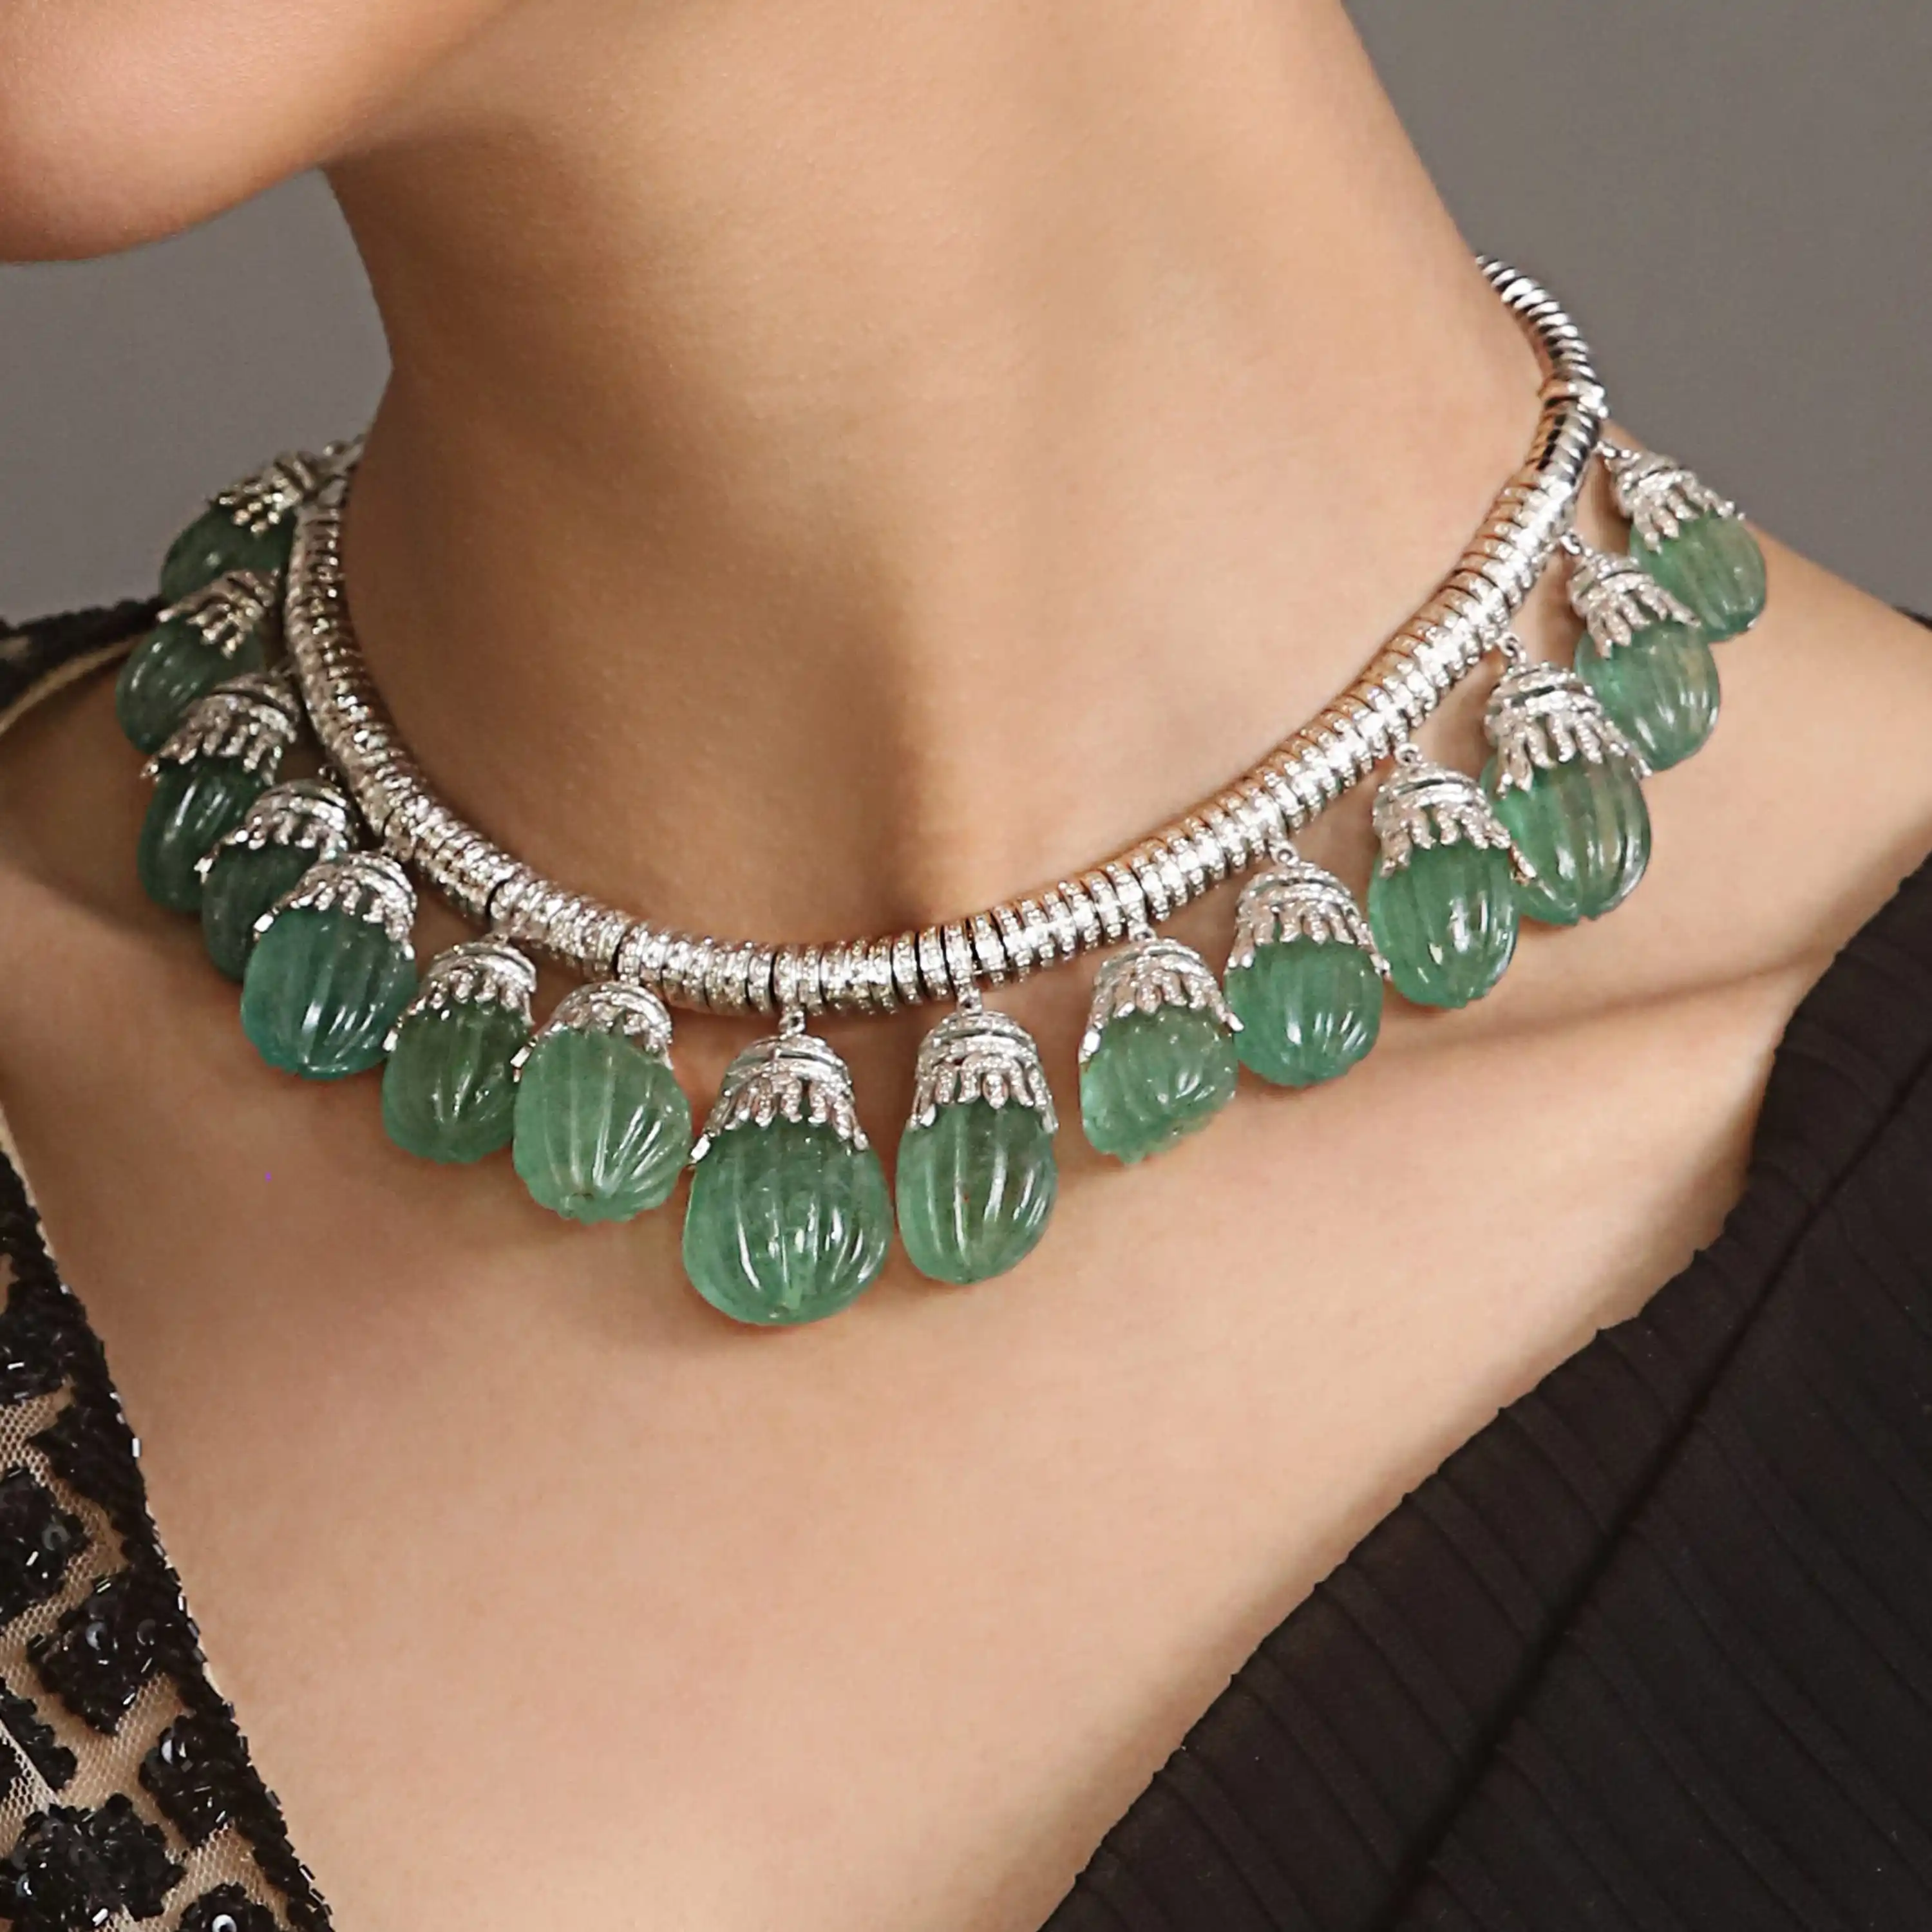 Jewelry photography of necklace on lifestyle background using domyshoot 